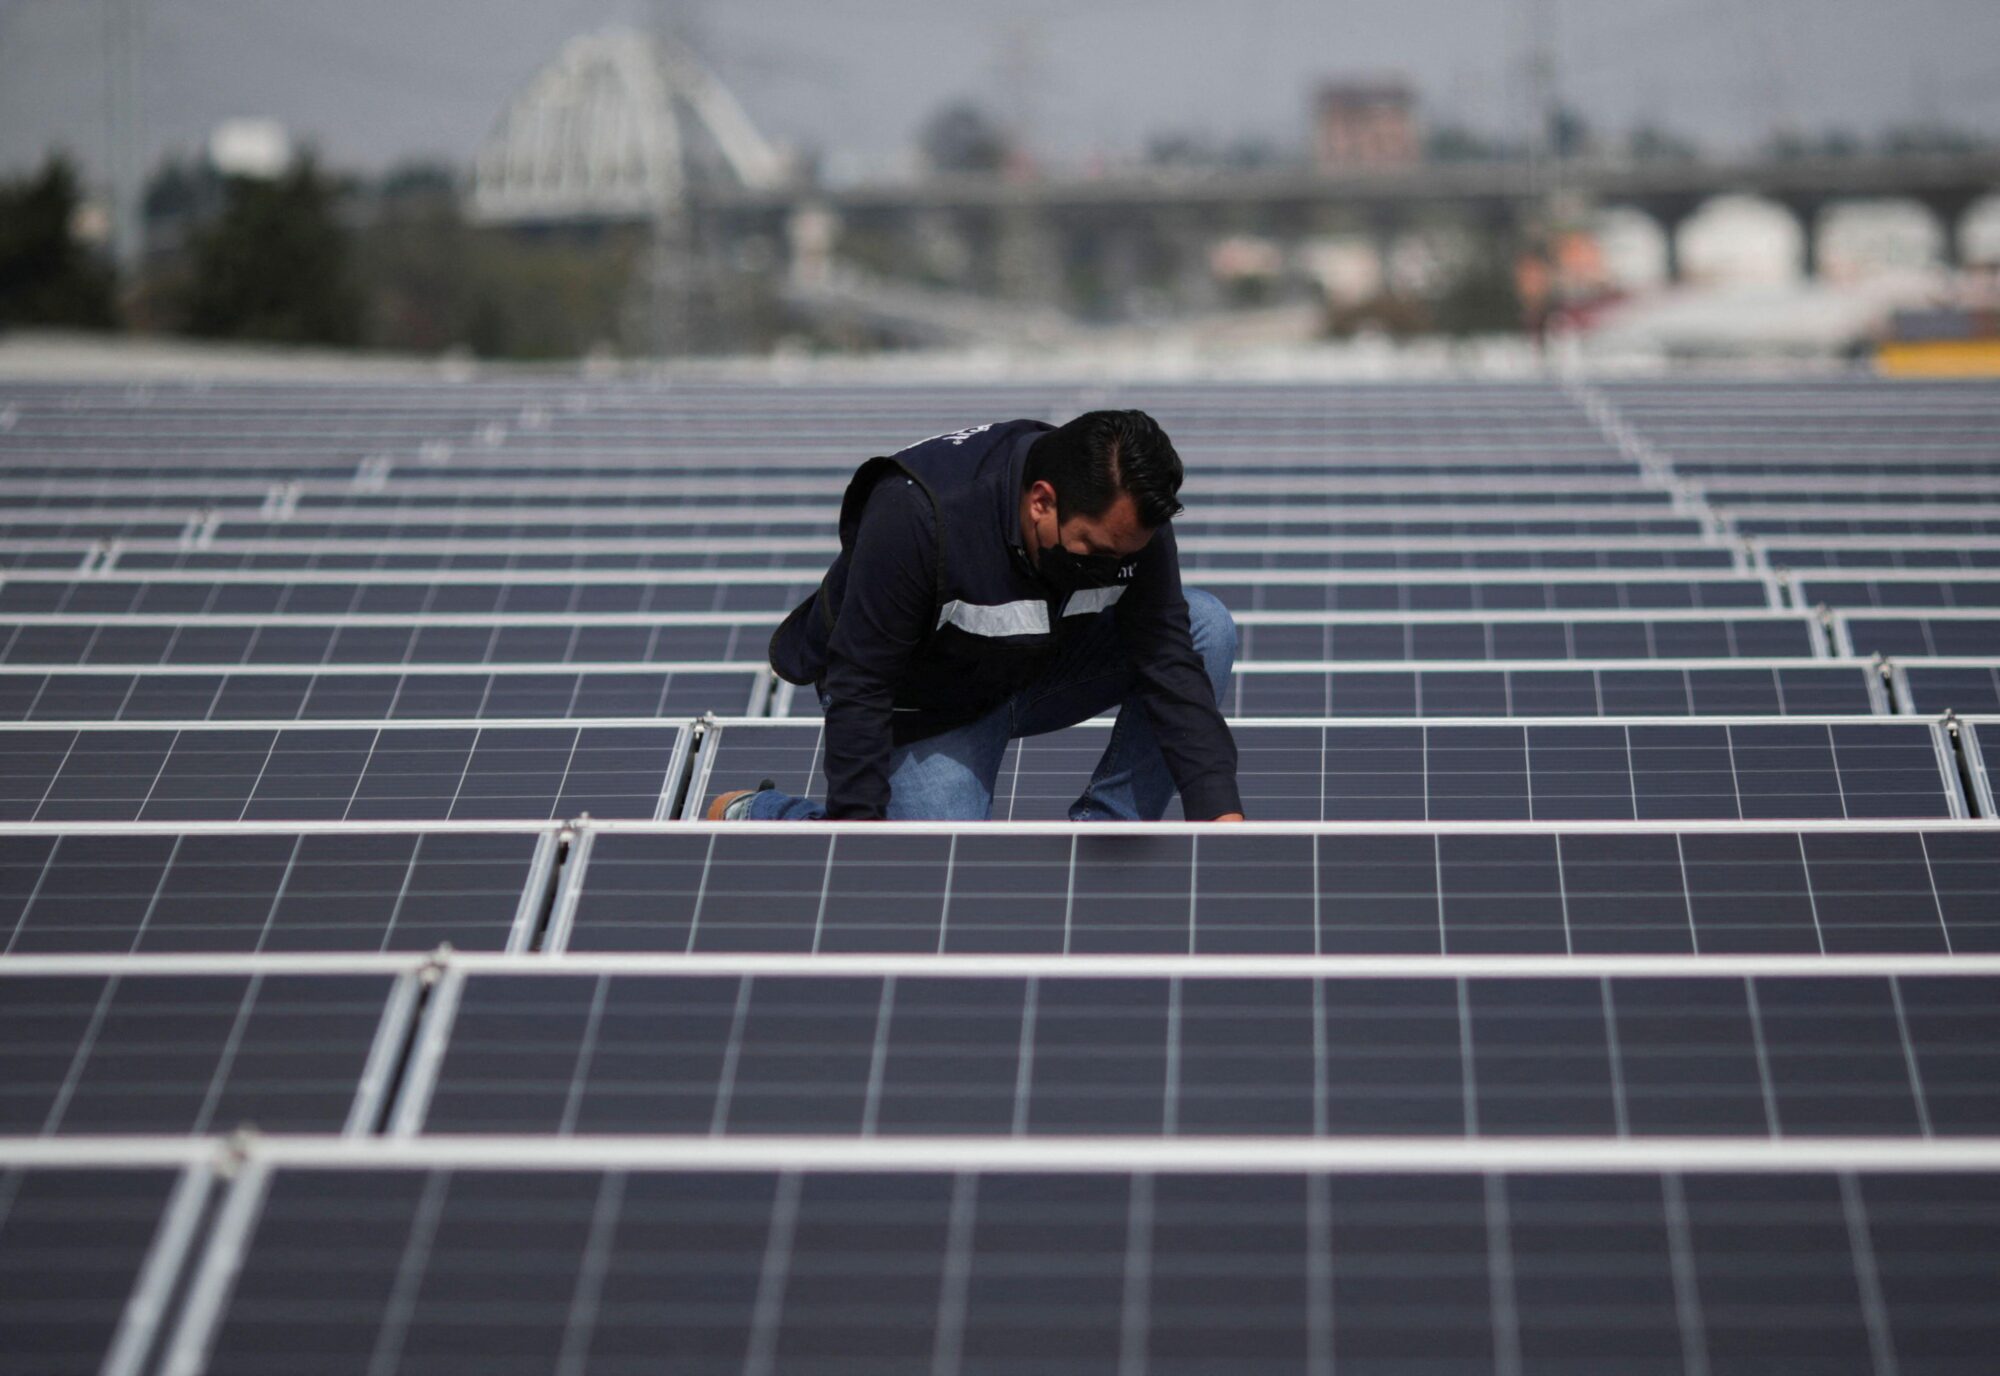 <p>Un ingeniero instala un panel solar en México, en agosto de este año. A nivel regional, se estima que se ahorrarían 621 millones de dólares con el cero neto sólo en el sector de energía y transporte. (Imagen: Henry Romero / Alamy)</p>